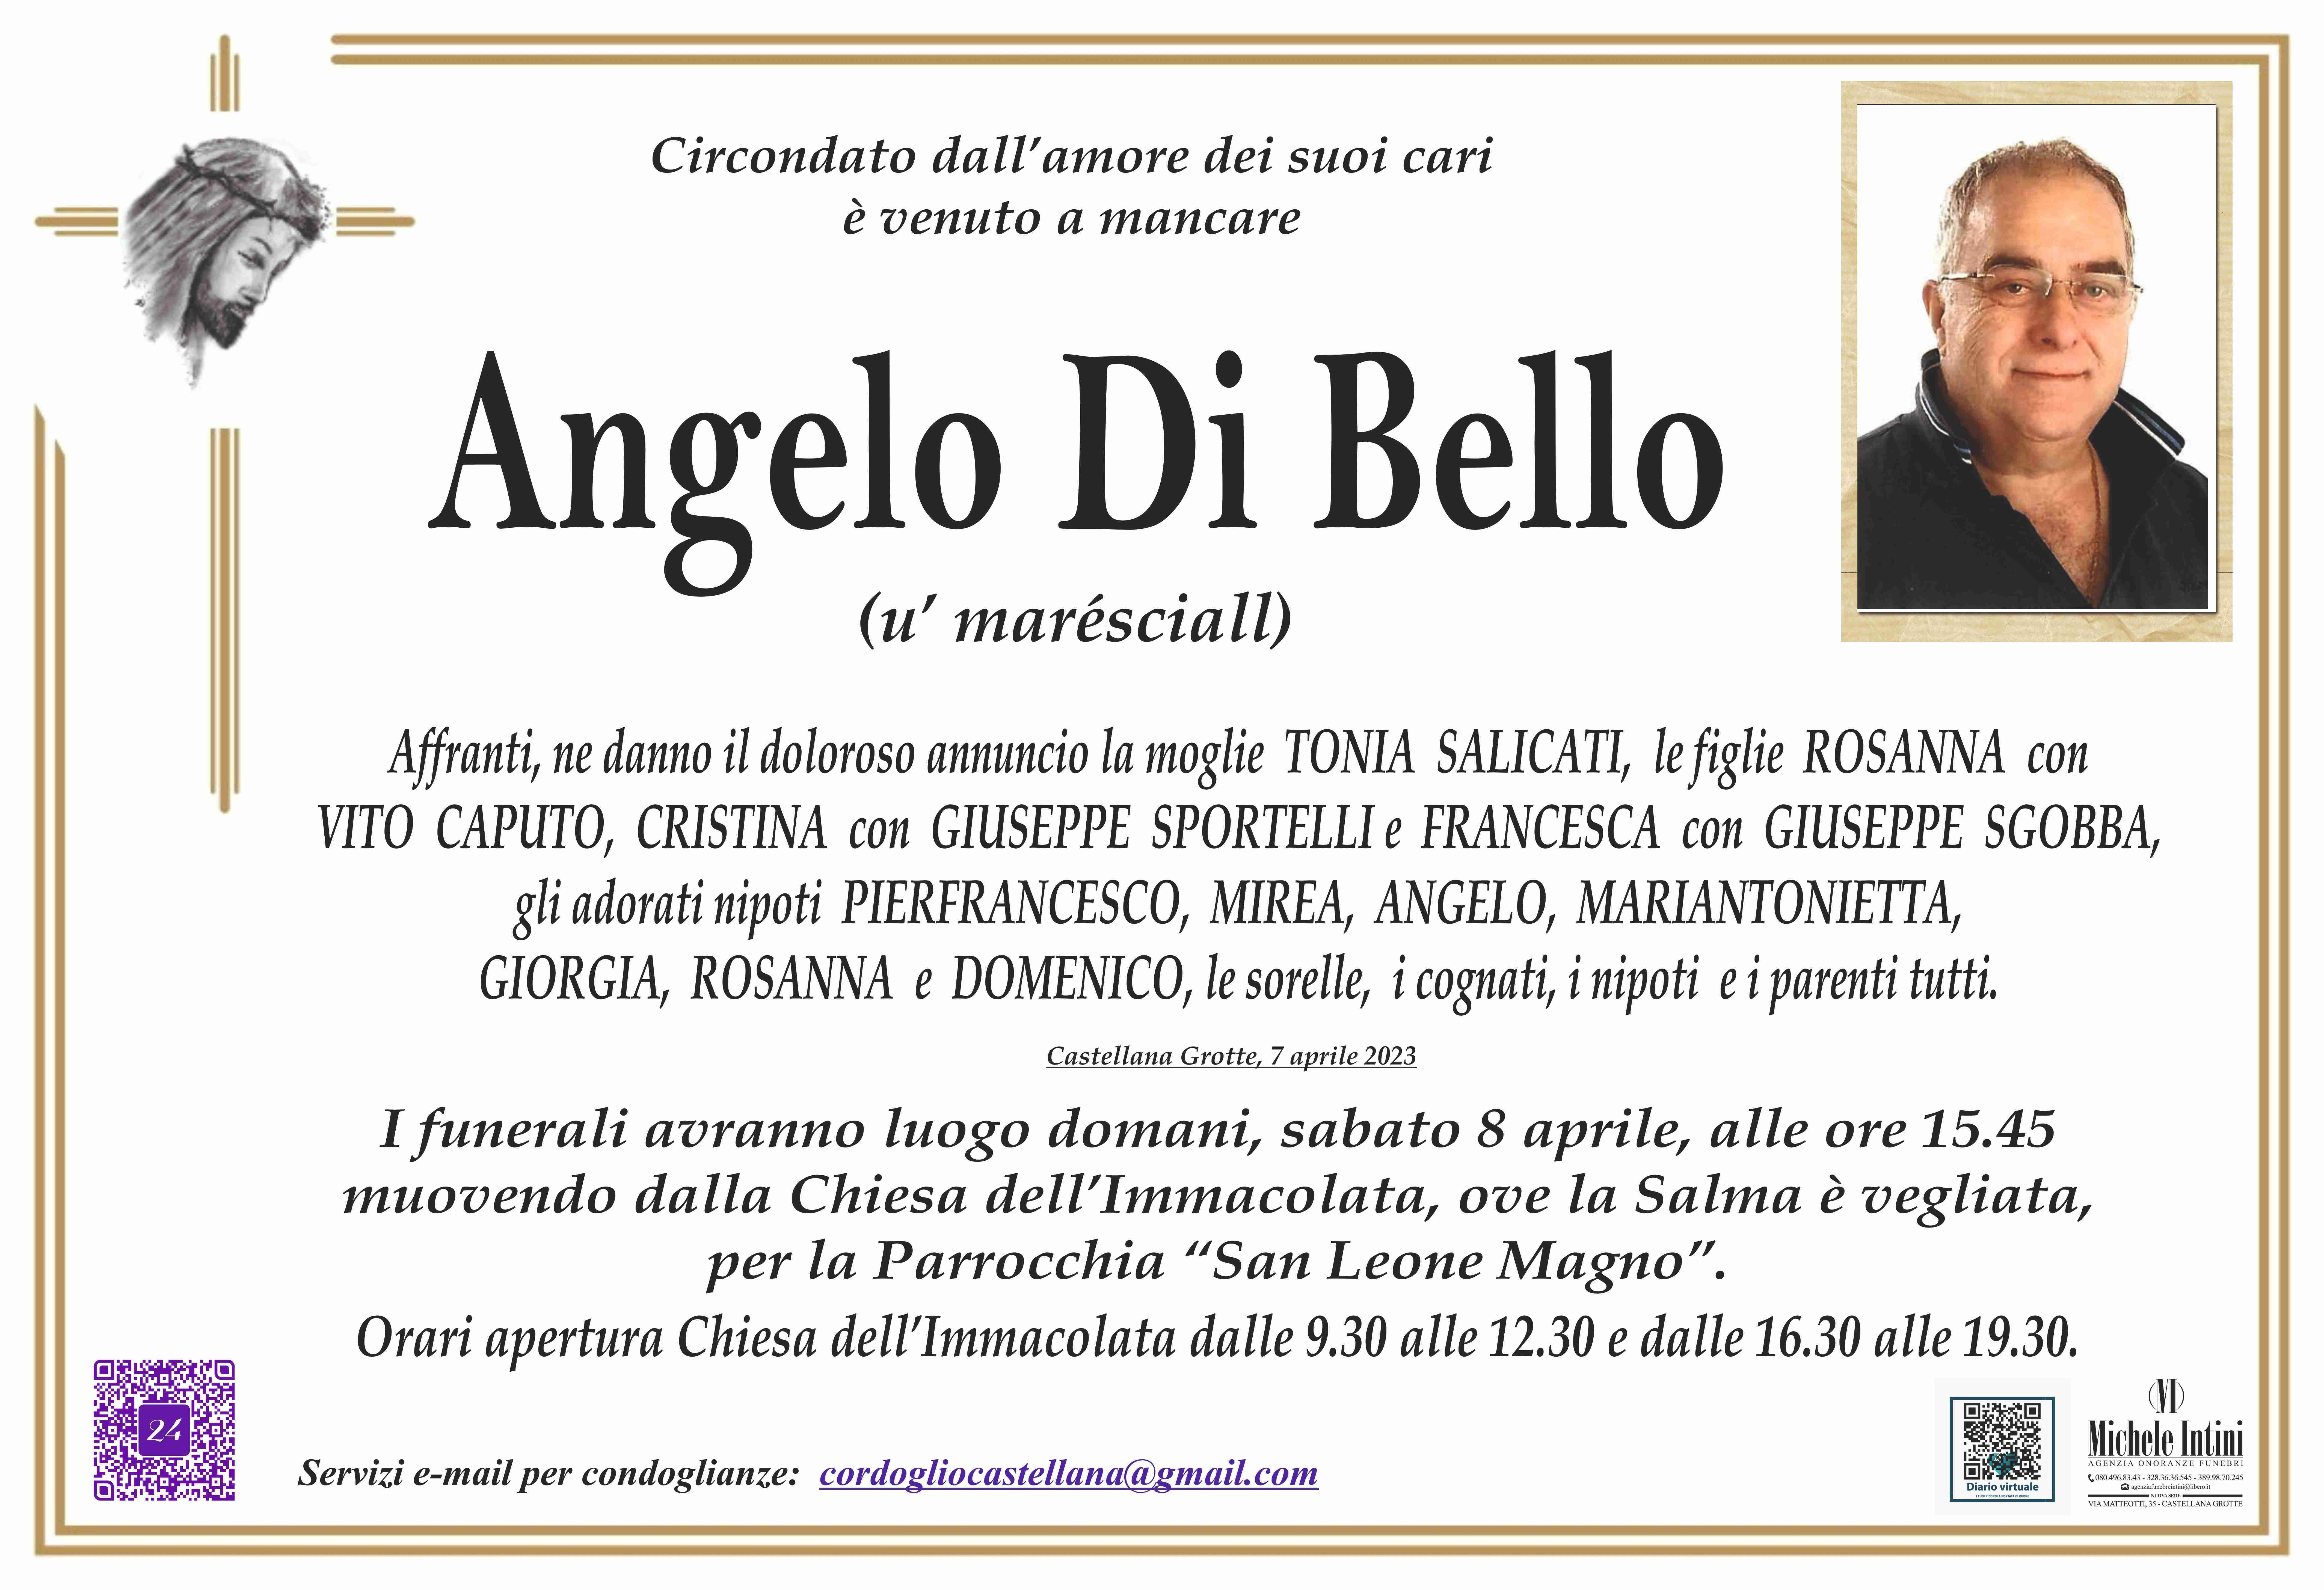 Angelo Di Bello